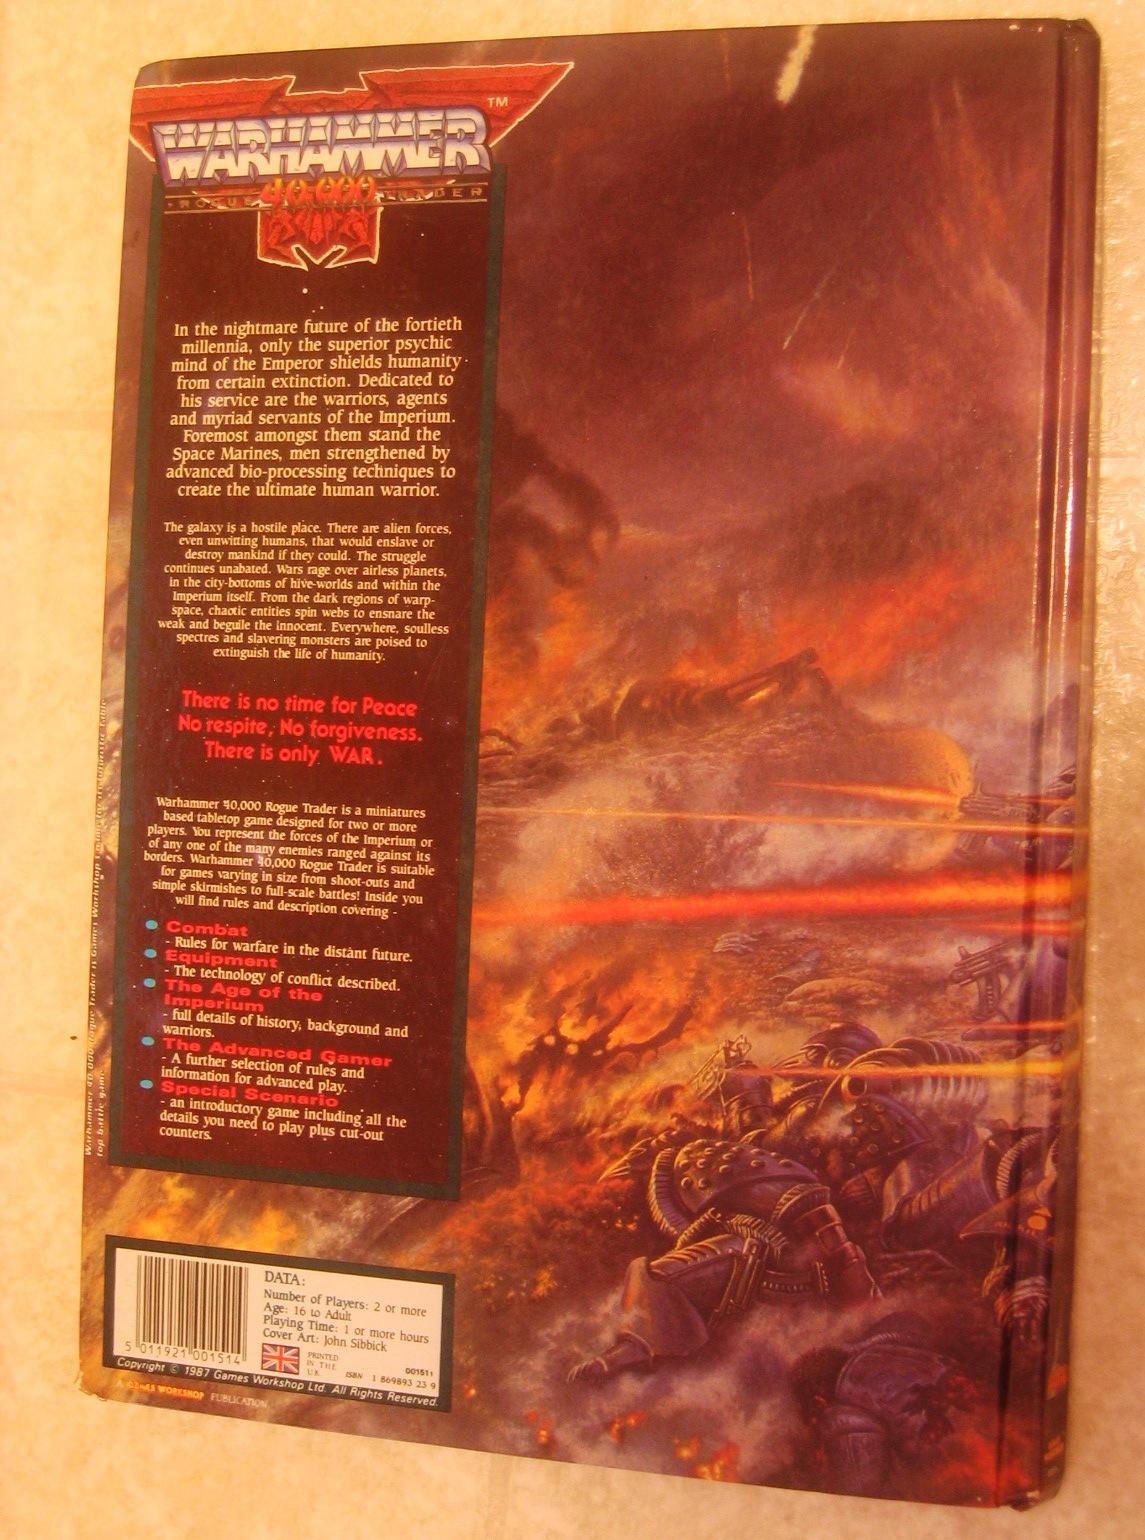 Warhammer 40,000 Rogue Trader 1987, back cover